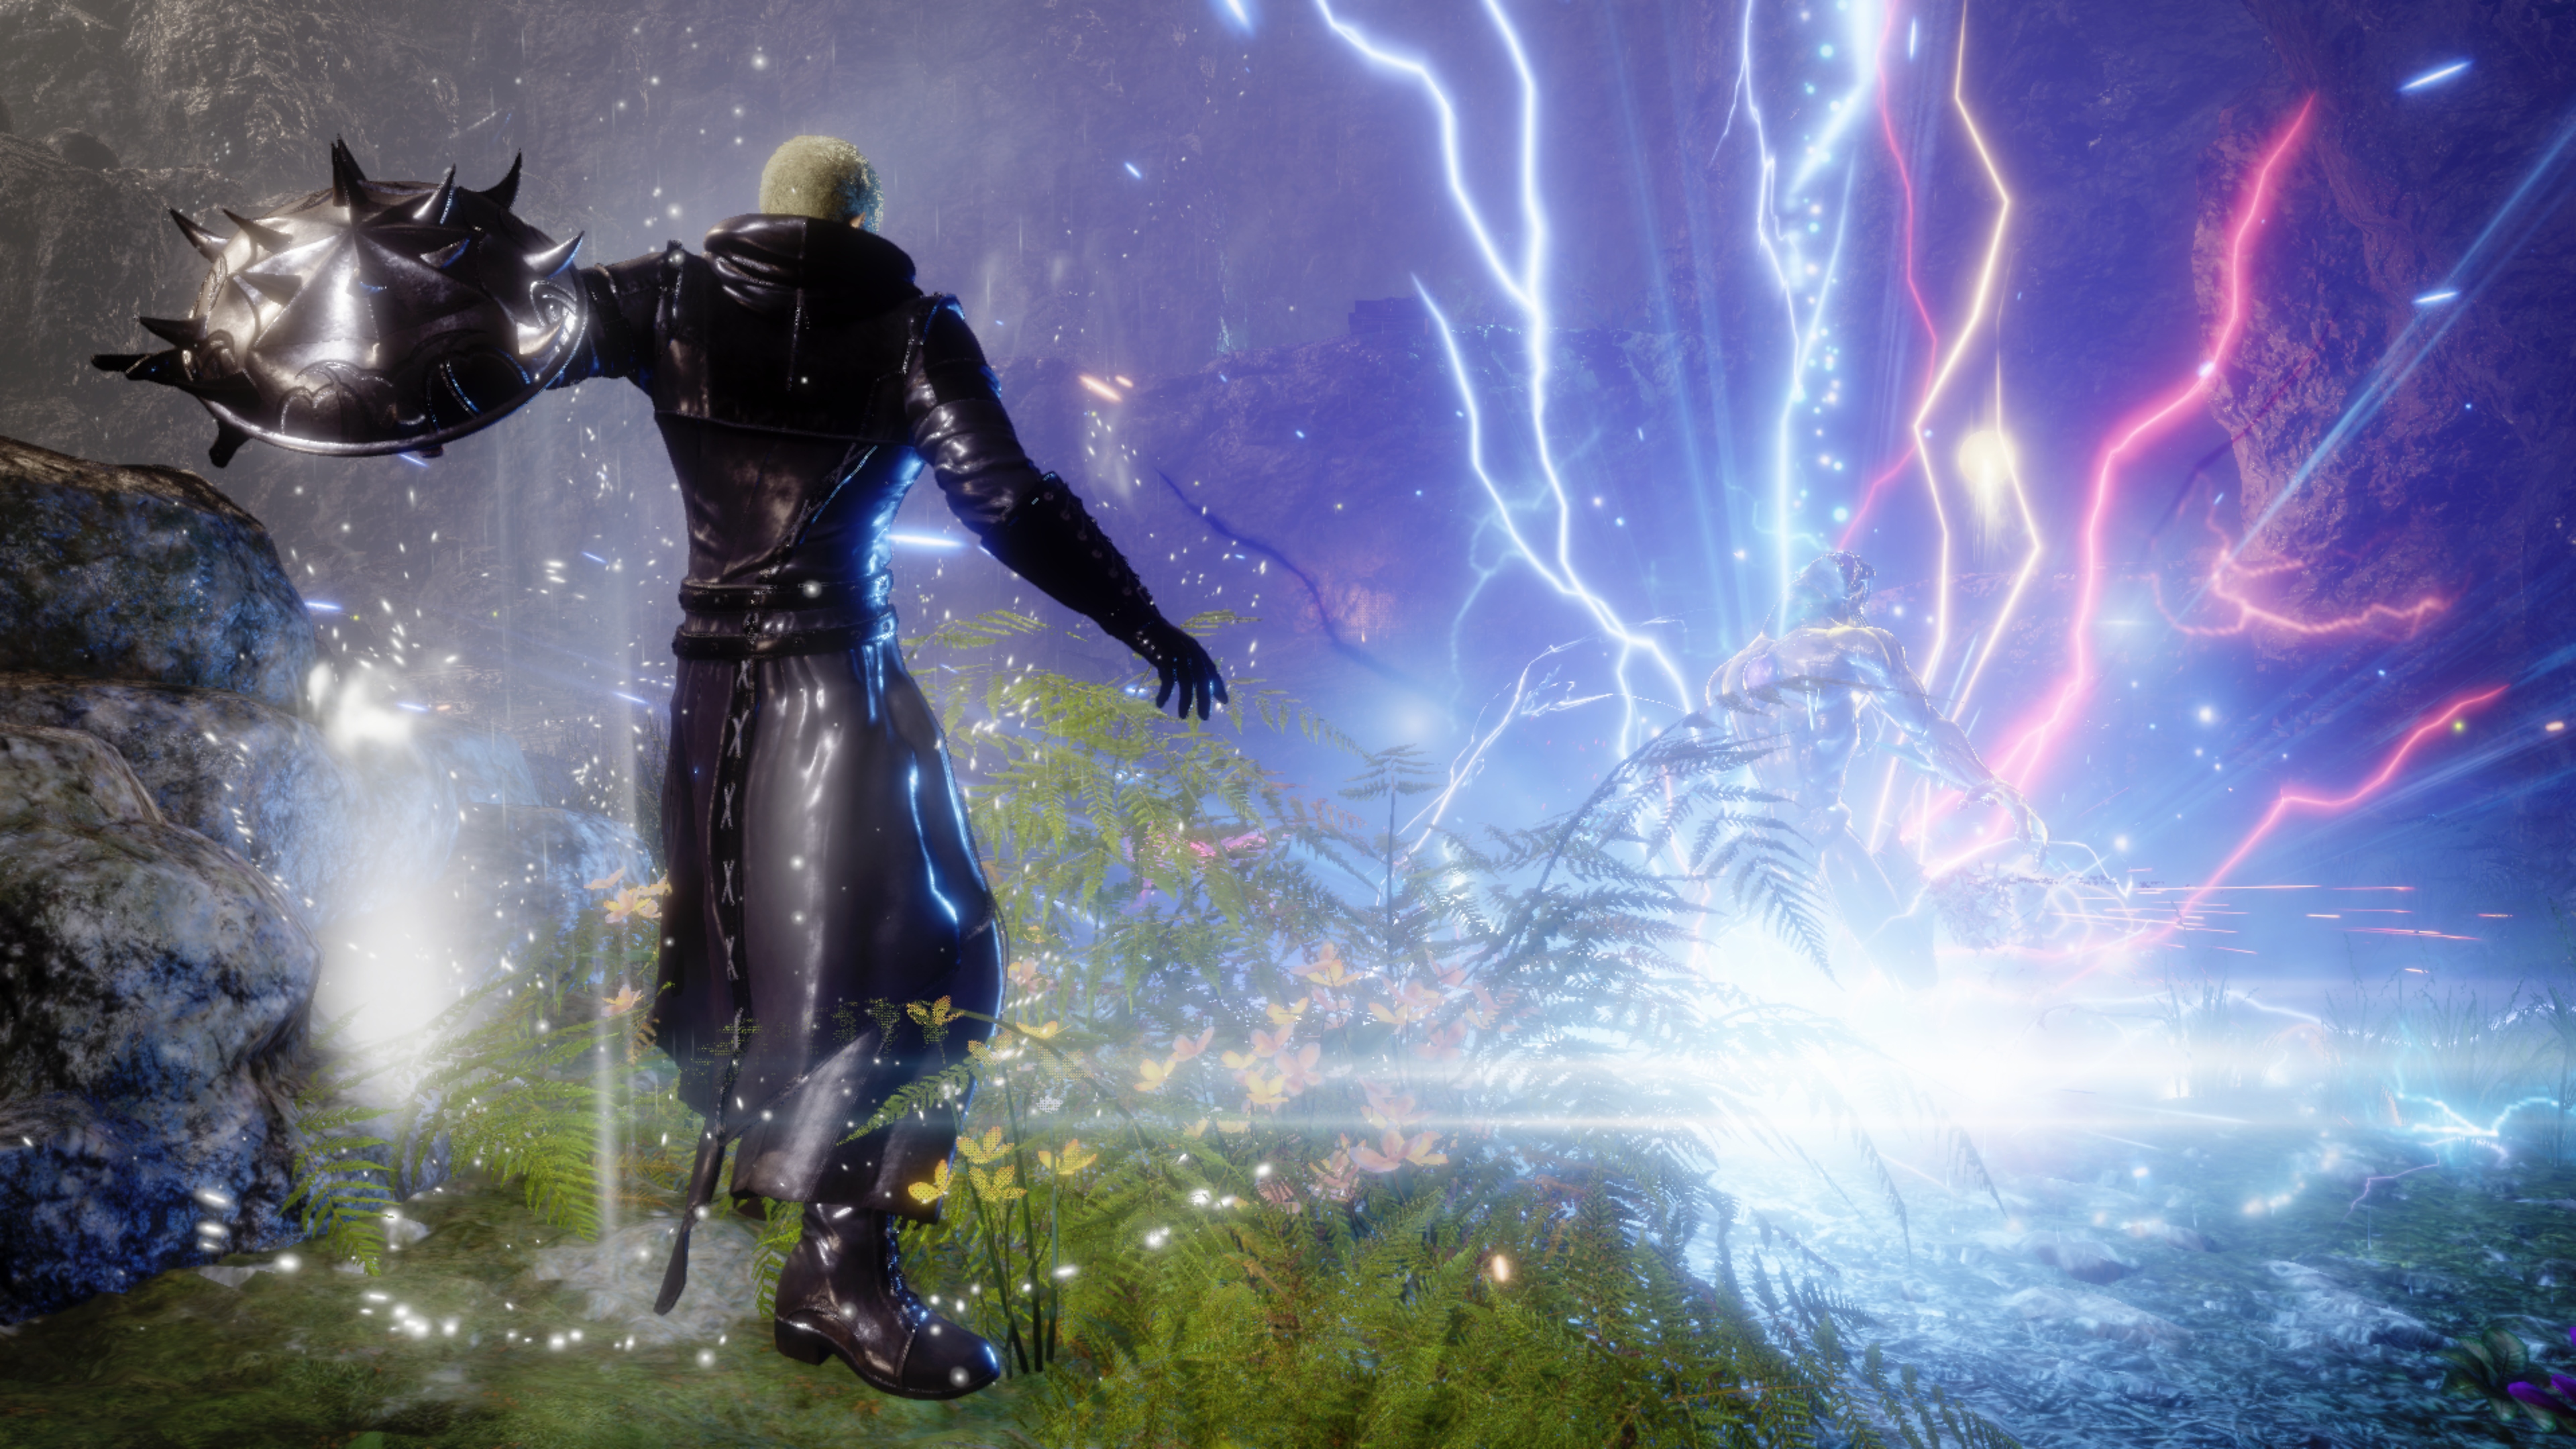 Stranger of Paradise: Final Fantasy Origin – снимок экрана, на котором Джек сражается, вооружившись шипастым щитом, а красные и синие молнии бьют о землю.